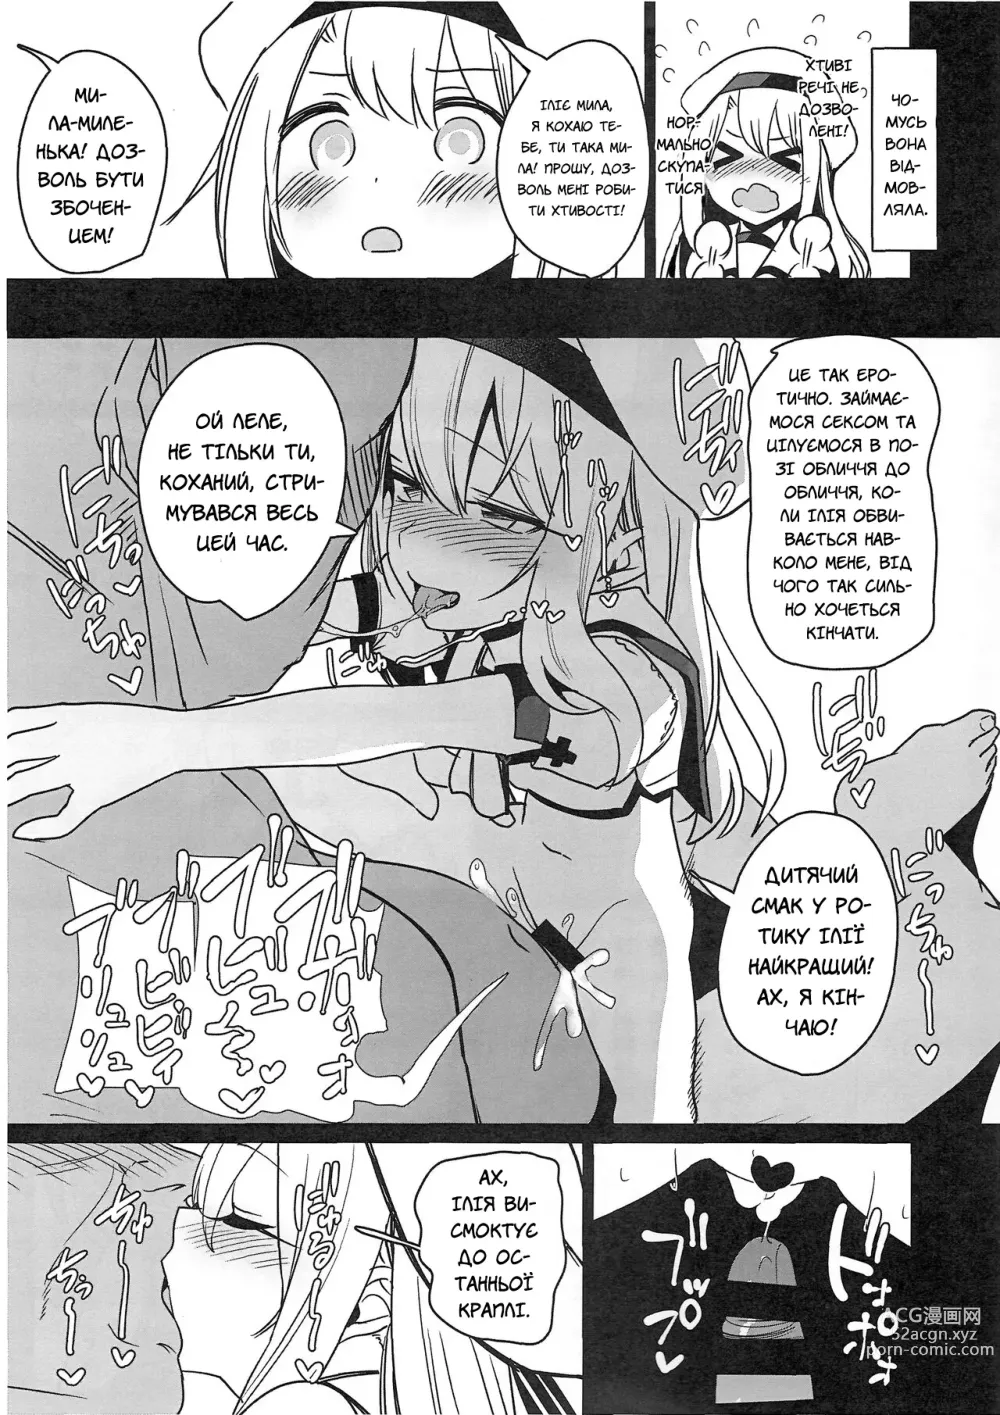 Page 198 of doujinshi Чарівні дівчата маратонно ґвалтуються